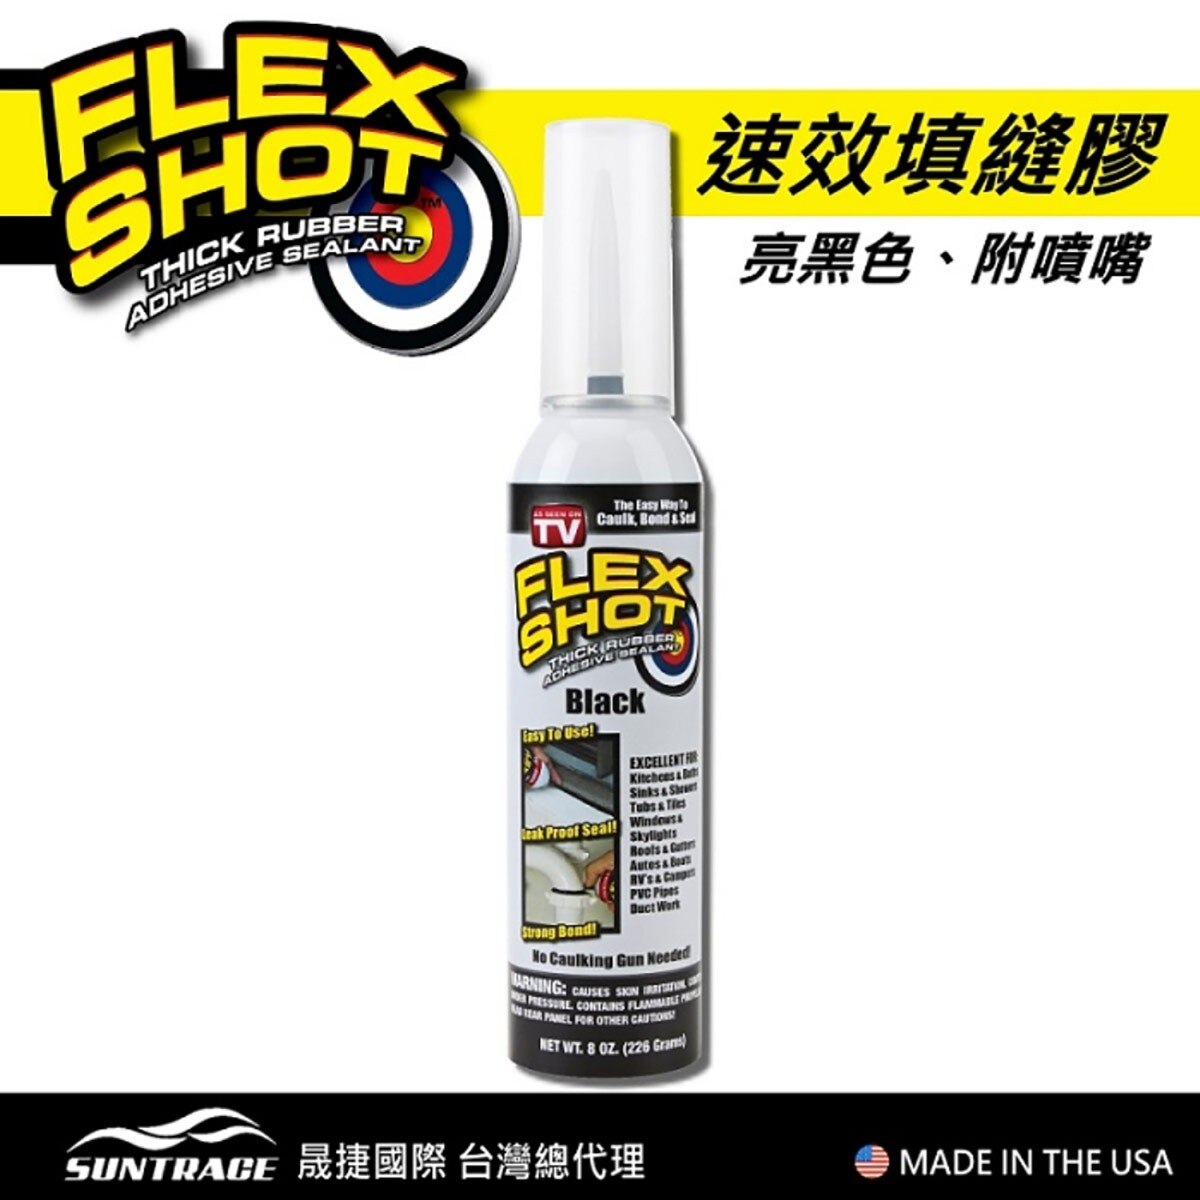 FLEX SHOT 速效填縫膠-黑色，美國製造，原裝進口。